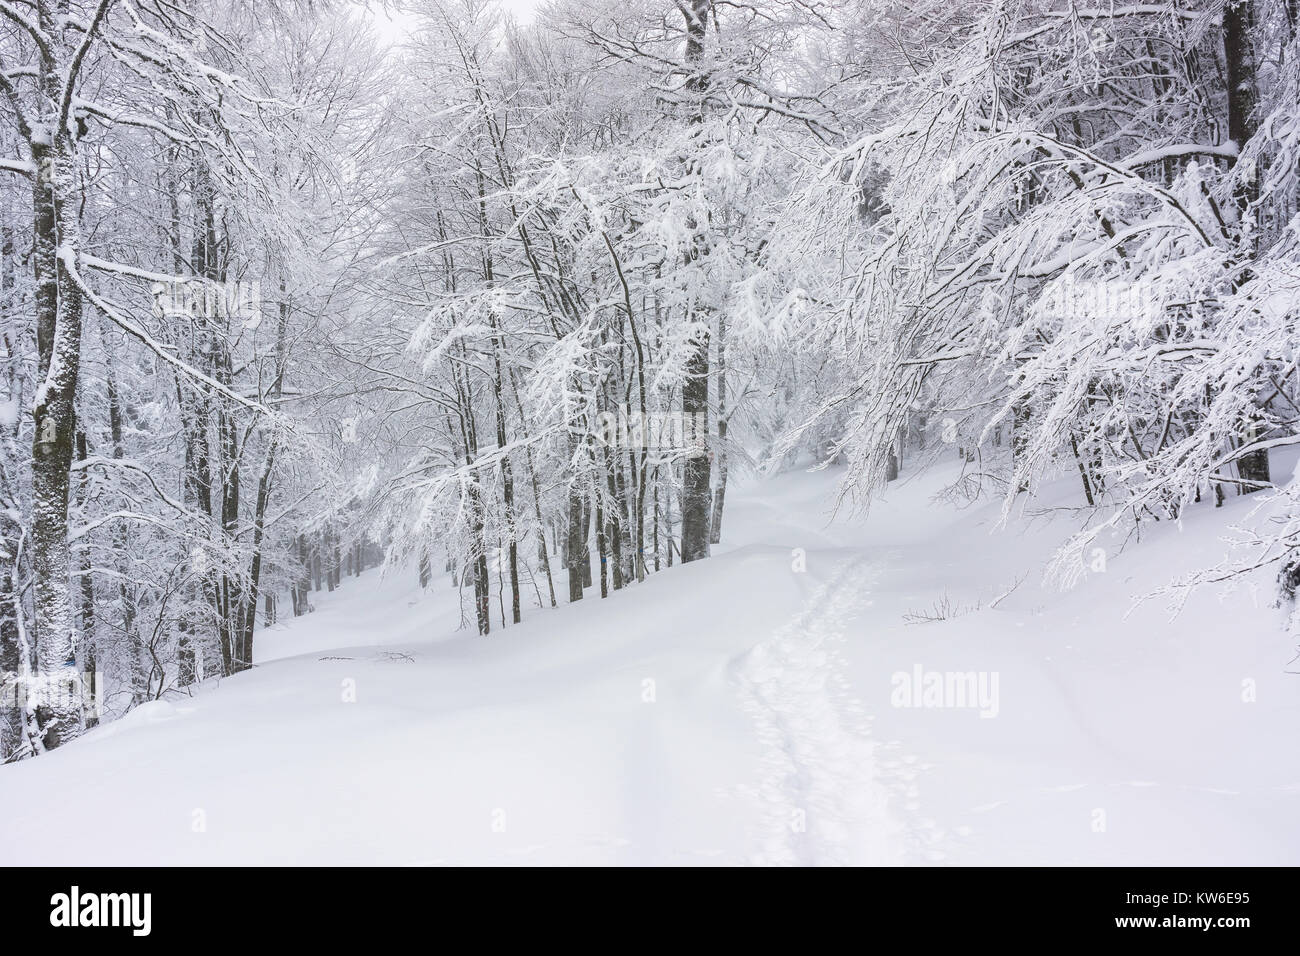 Paysage d'hiver sentier de randonnée : recouvert de neige dans une forêt enneigée dans les Vosges, France. Banque D'Images